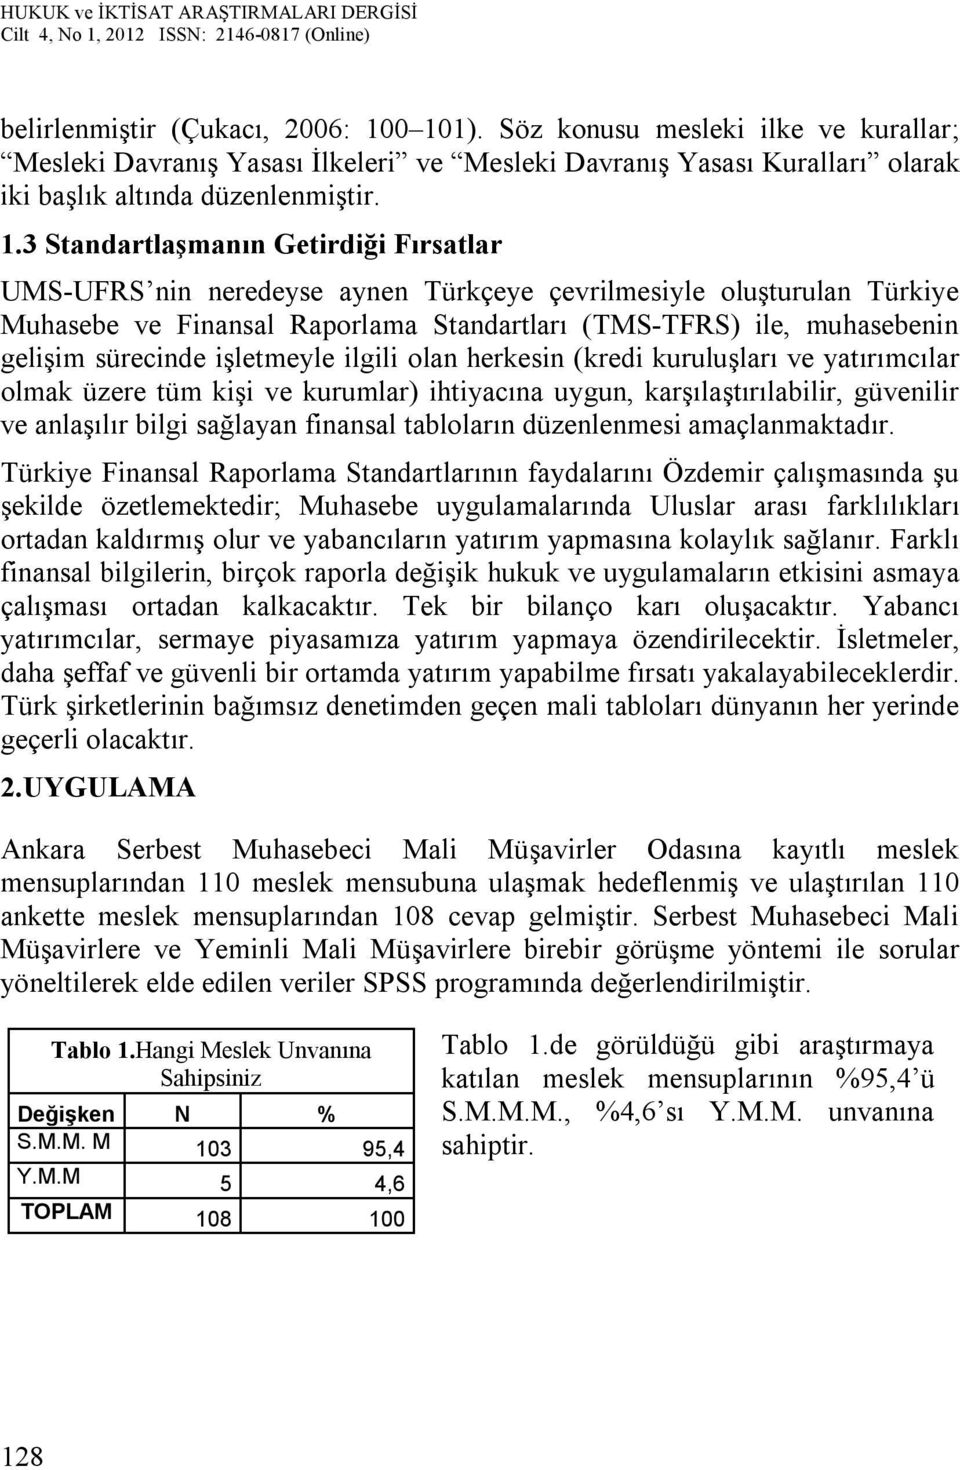 UMS-UFRS nin neredeyse aynen Türkçeye çevrilmesiyle oluşturulan Türkiye Muhasebe ve Finansal Raporlama Standartları (TMS-TFRS) ile, muhasebenin gelişim sürecinde işletmeyle ilgili olan herkesin